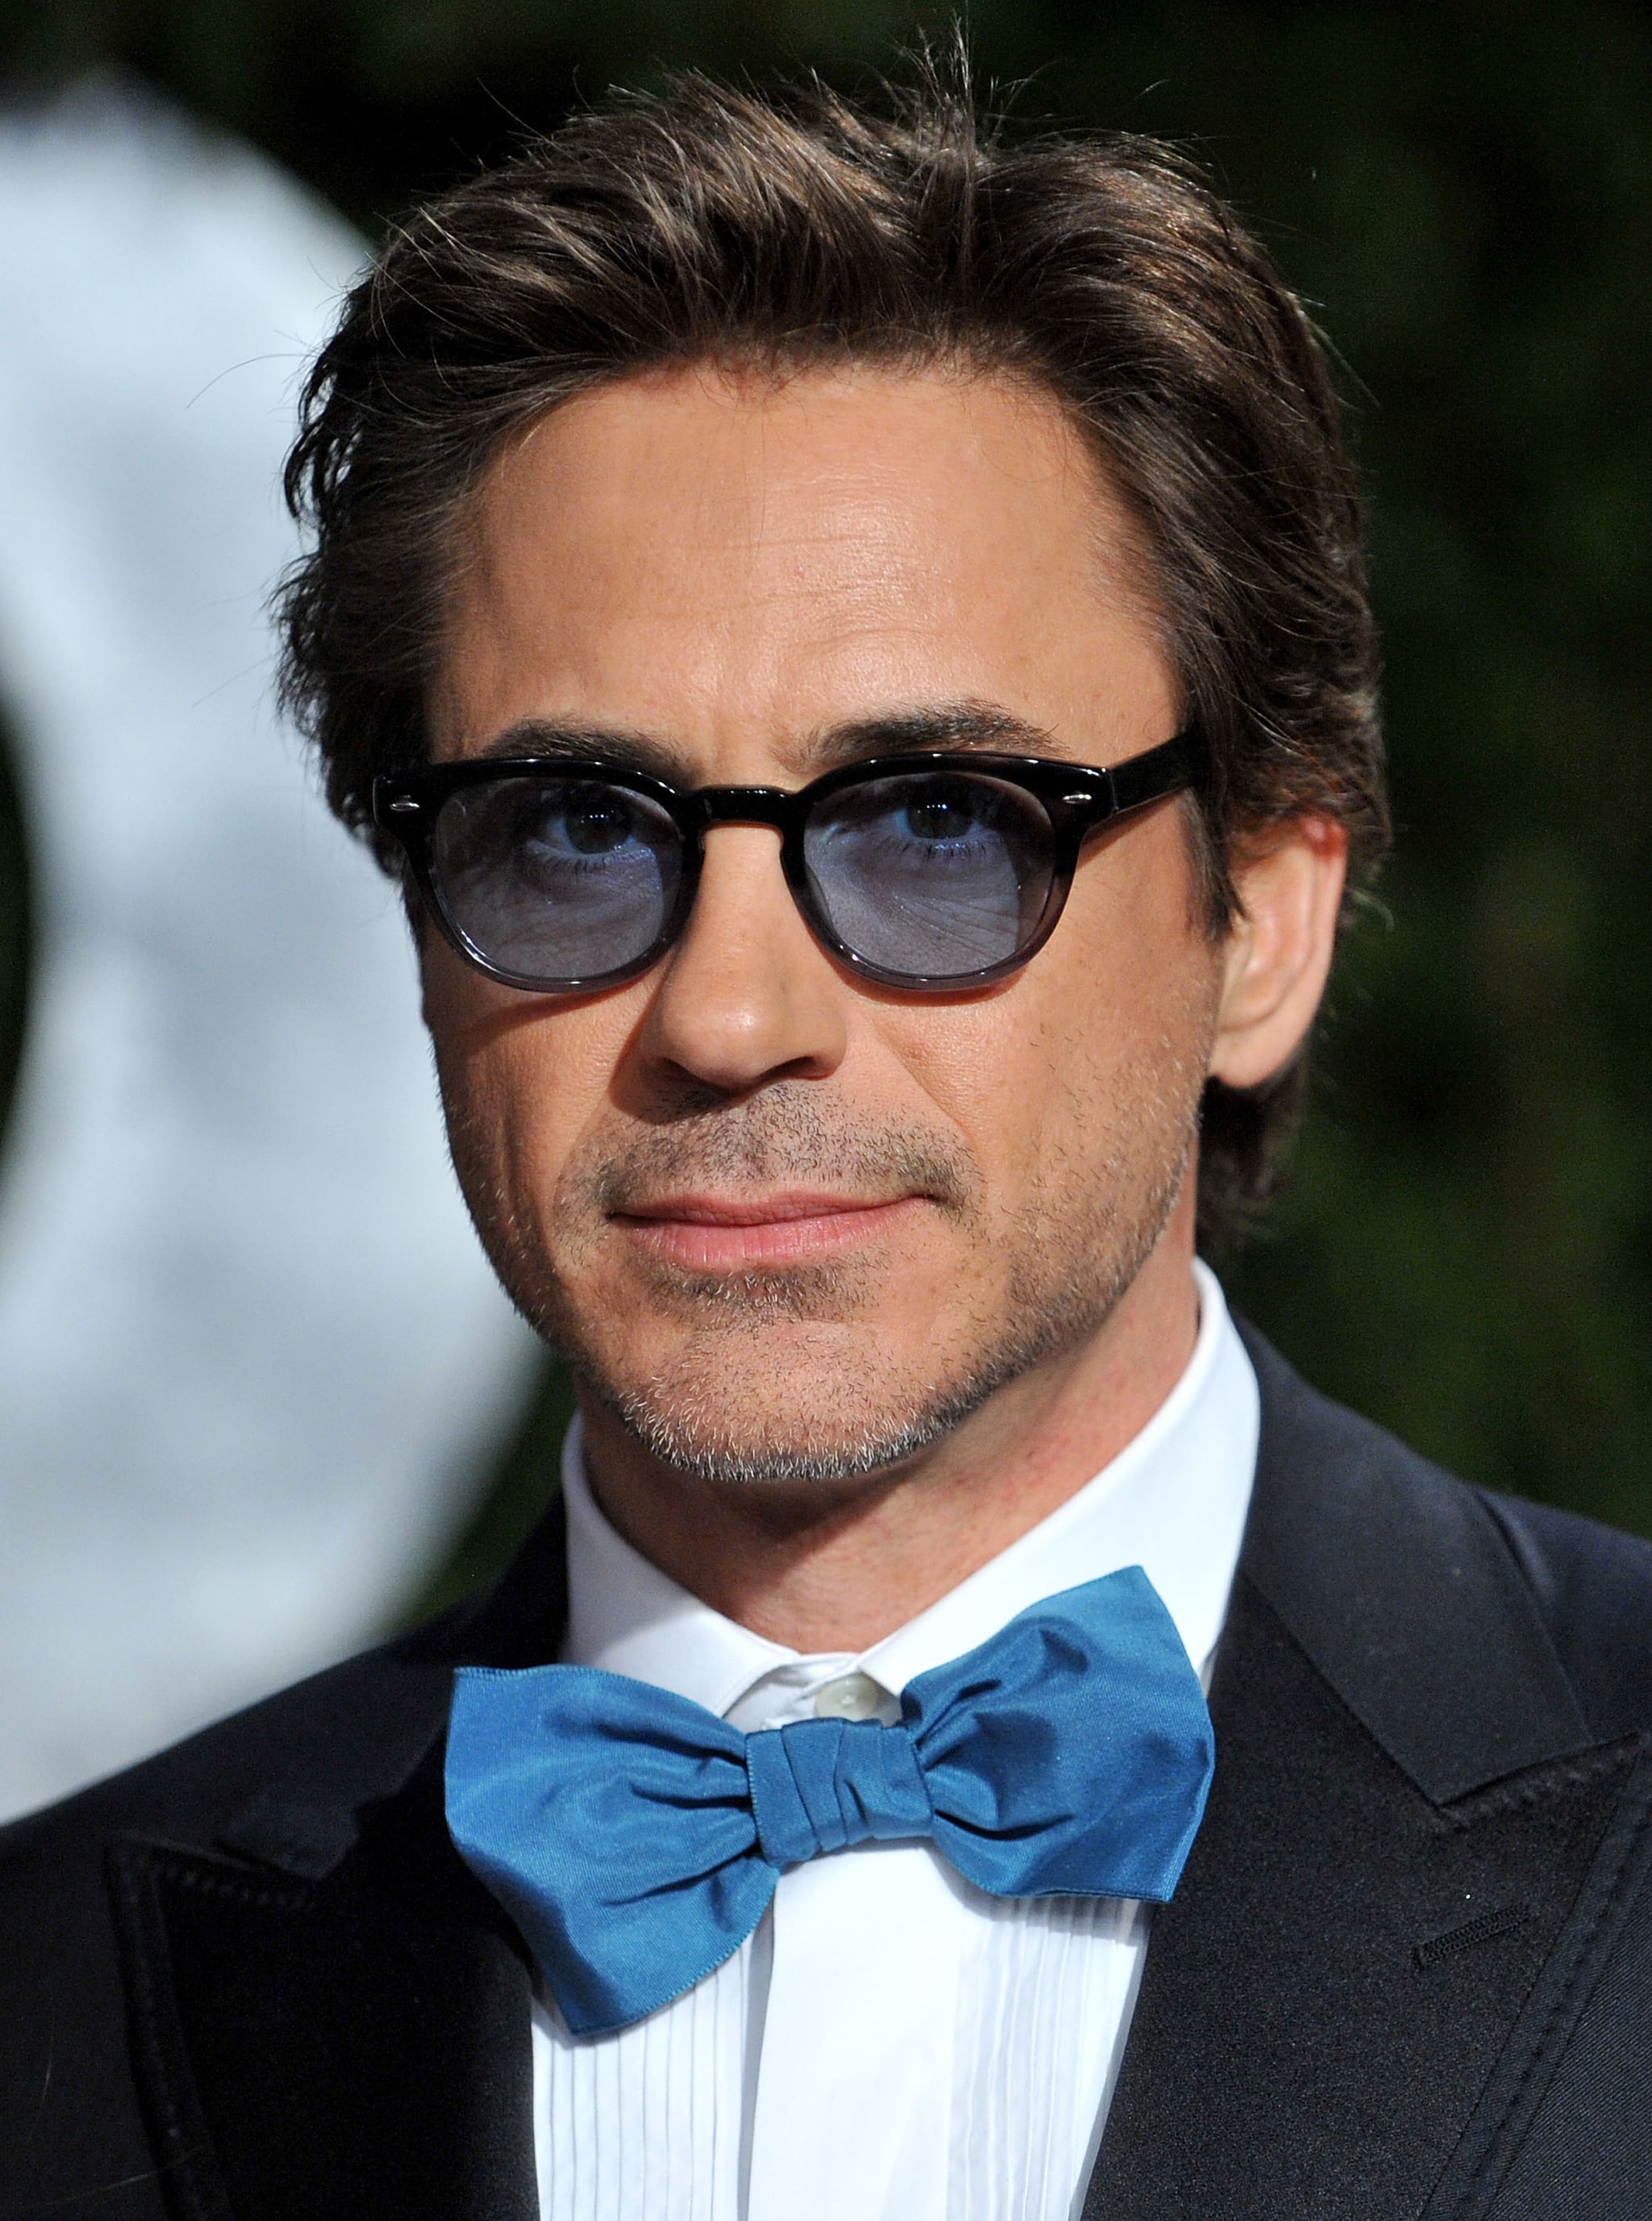 Robert Downey Jr. Sunglasses at Oscars 2010 - Oliver Peoples Sheldrake